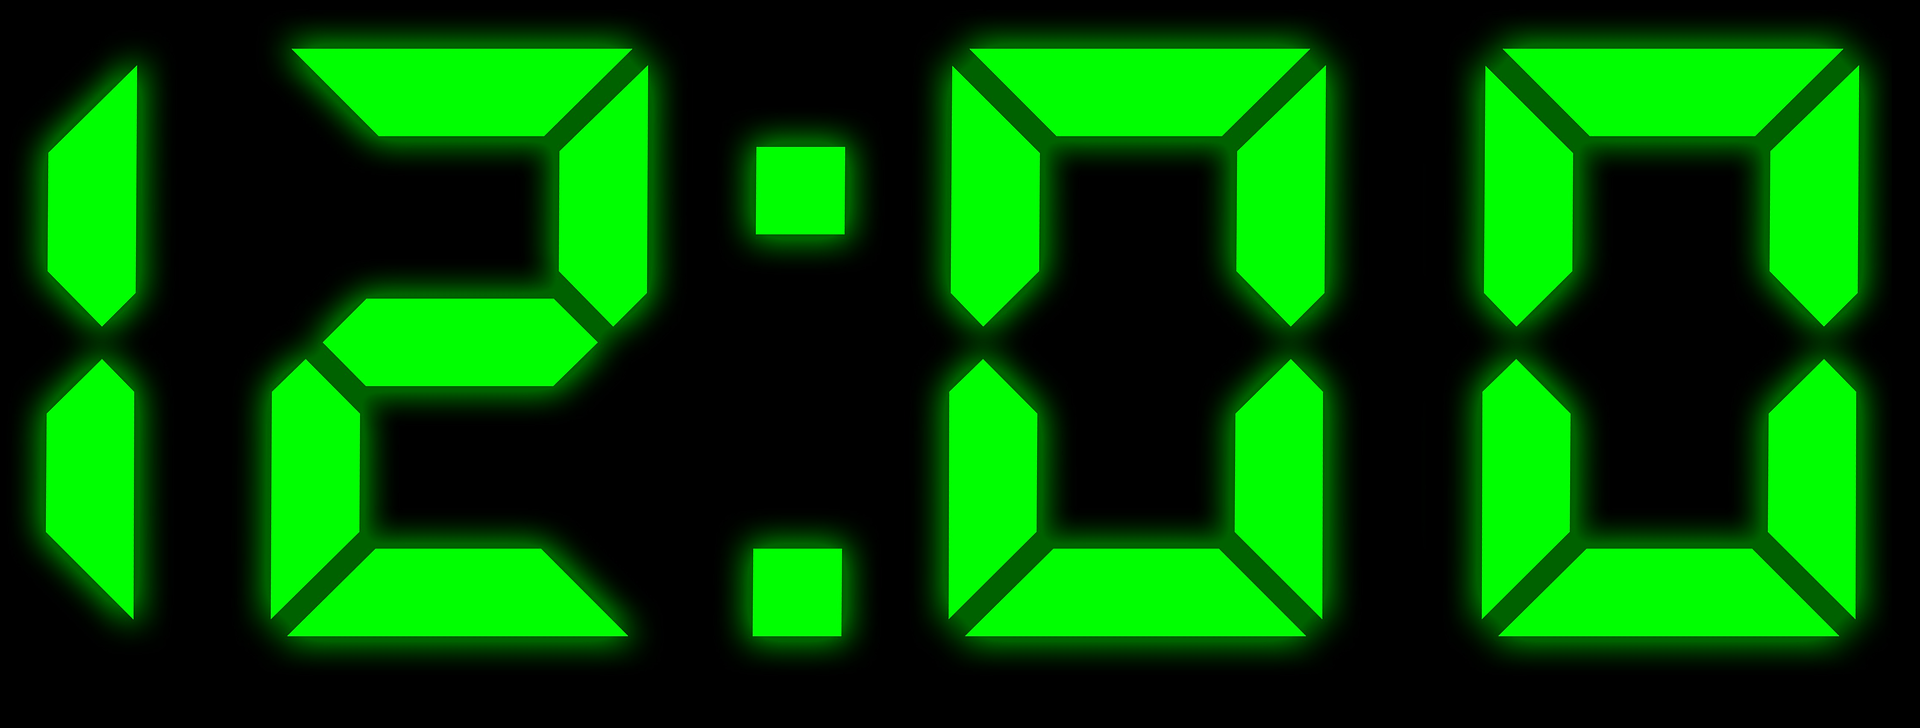 18 00 свет. Цифры электронных часов. Электронные часы зеленые. Часы цифровые зеленые. Электронные часы 12 00.